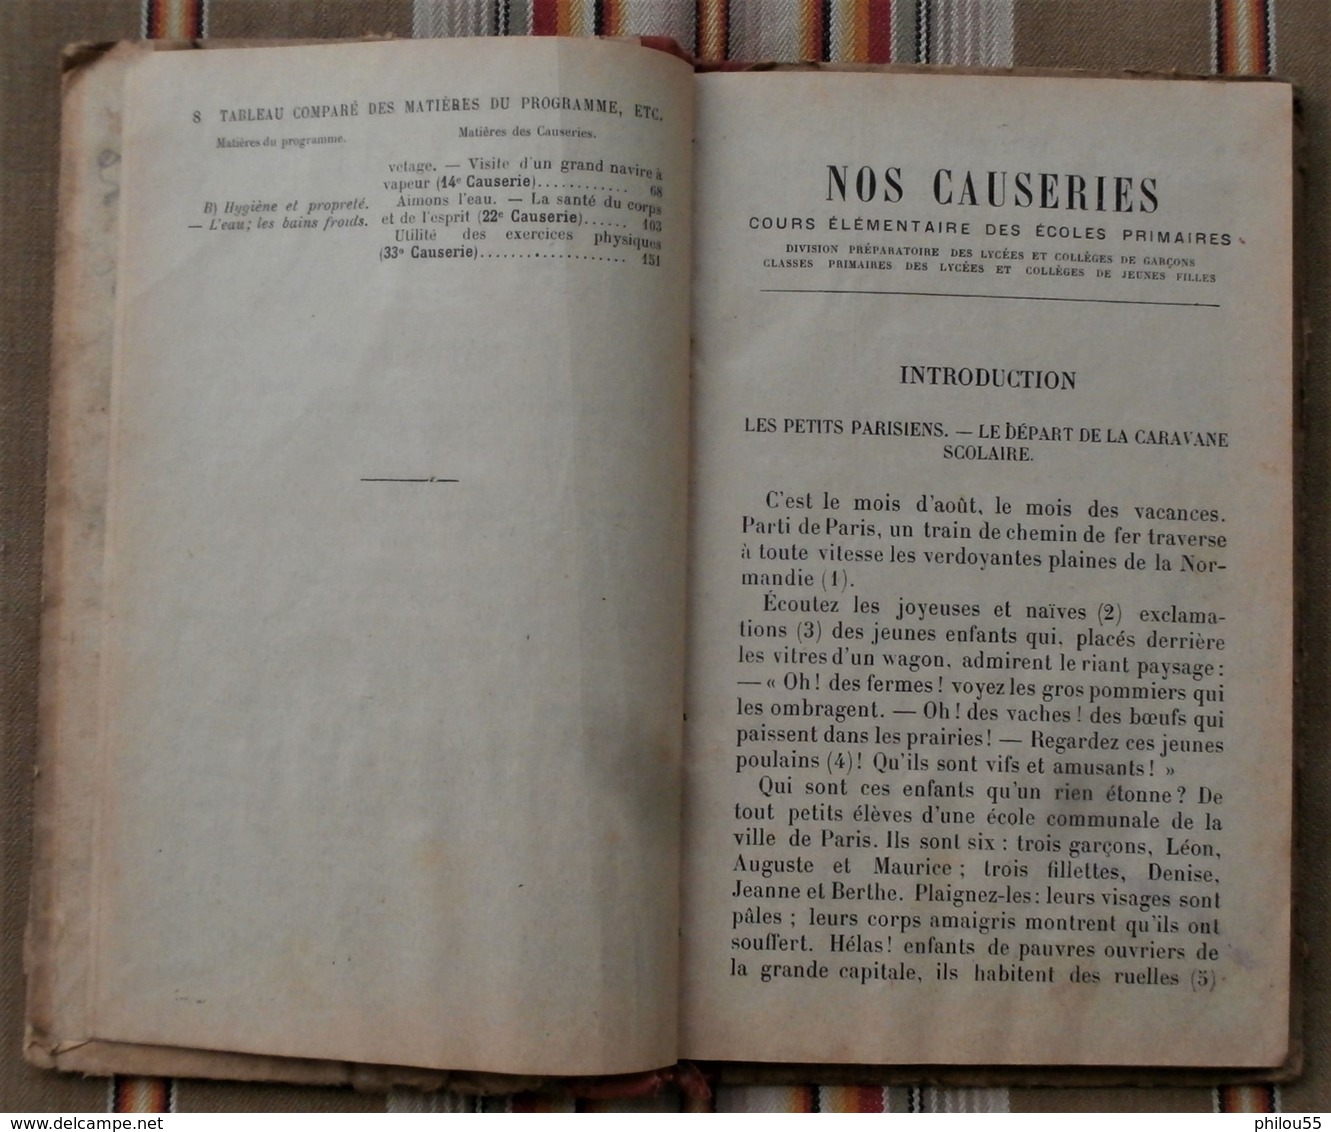 NOS CAUSERIES Lecture CE Paul DELAPLANE 1907 Illustrations J. GUIOT FR. MANE pas courant